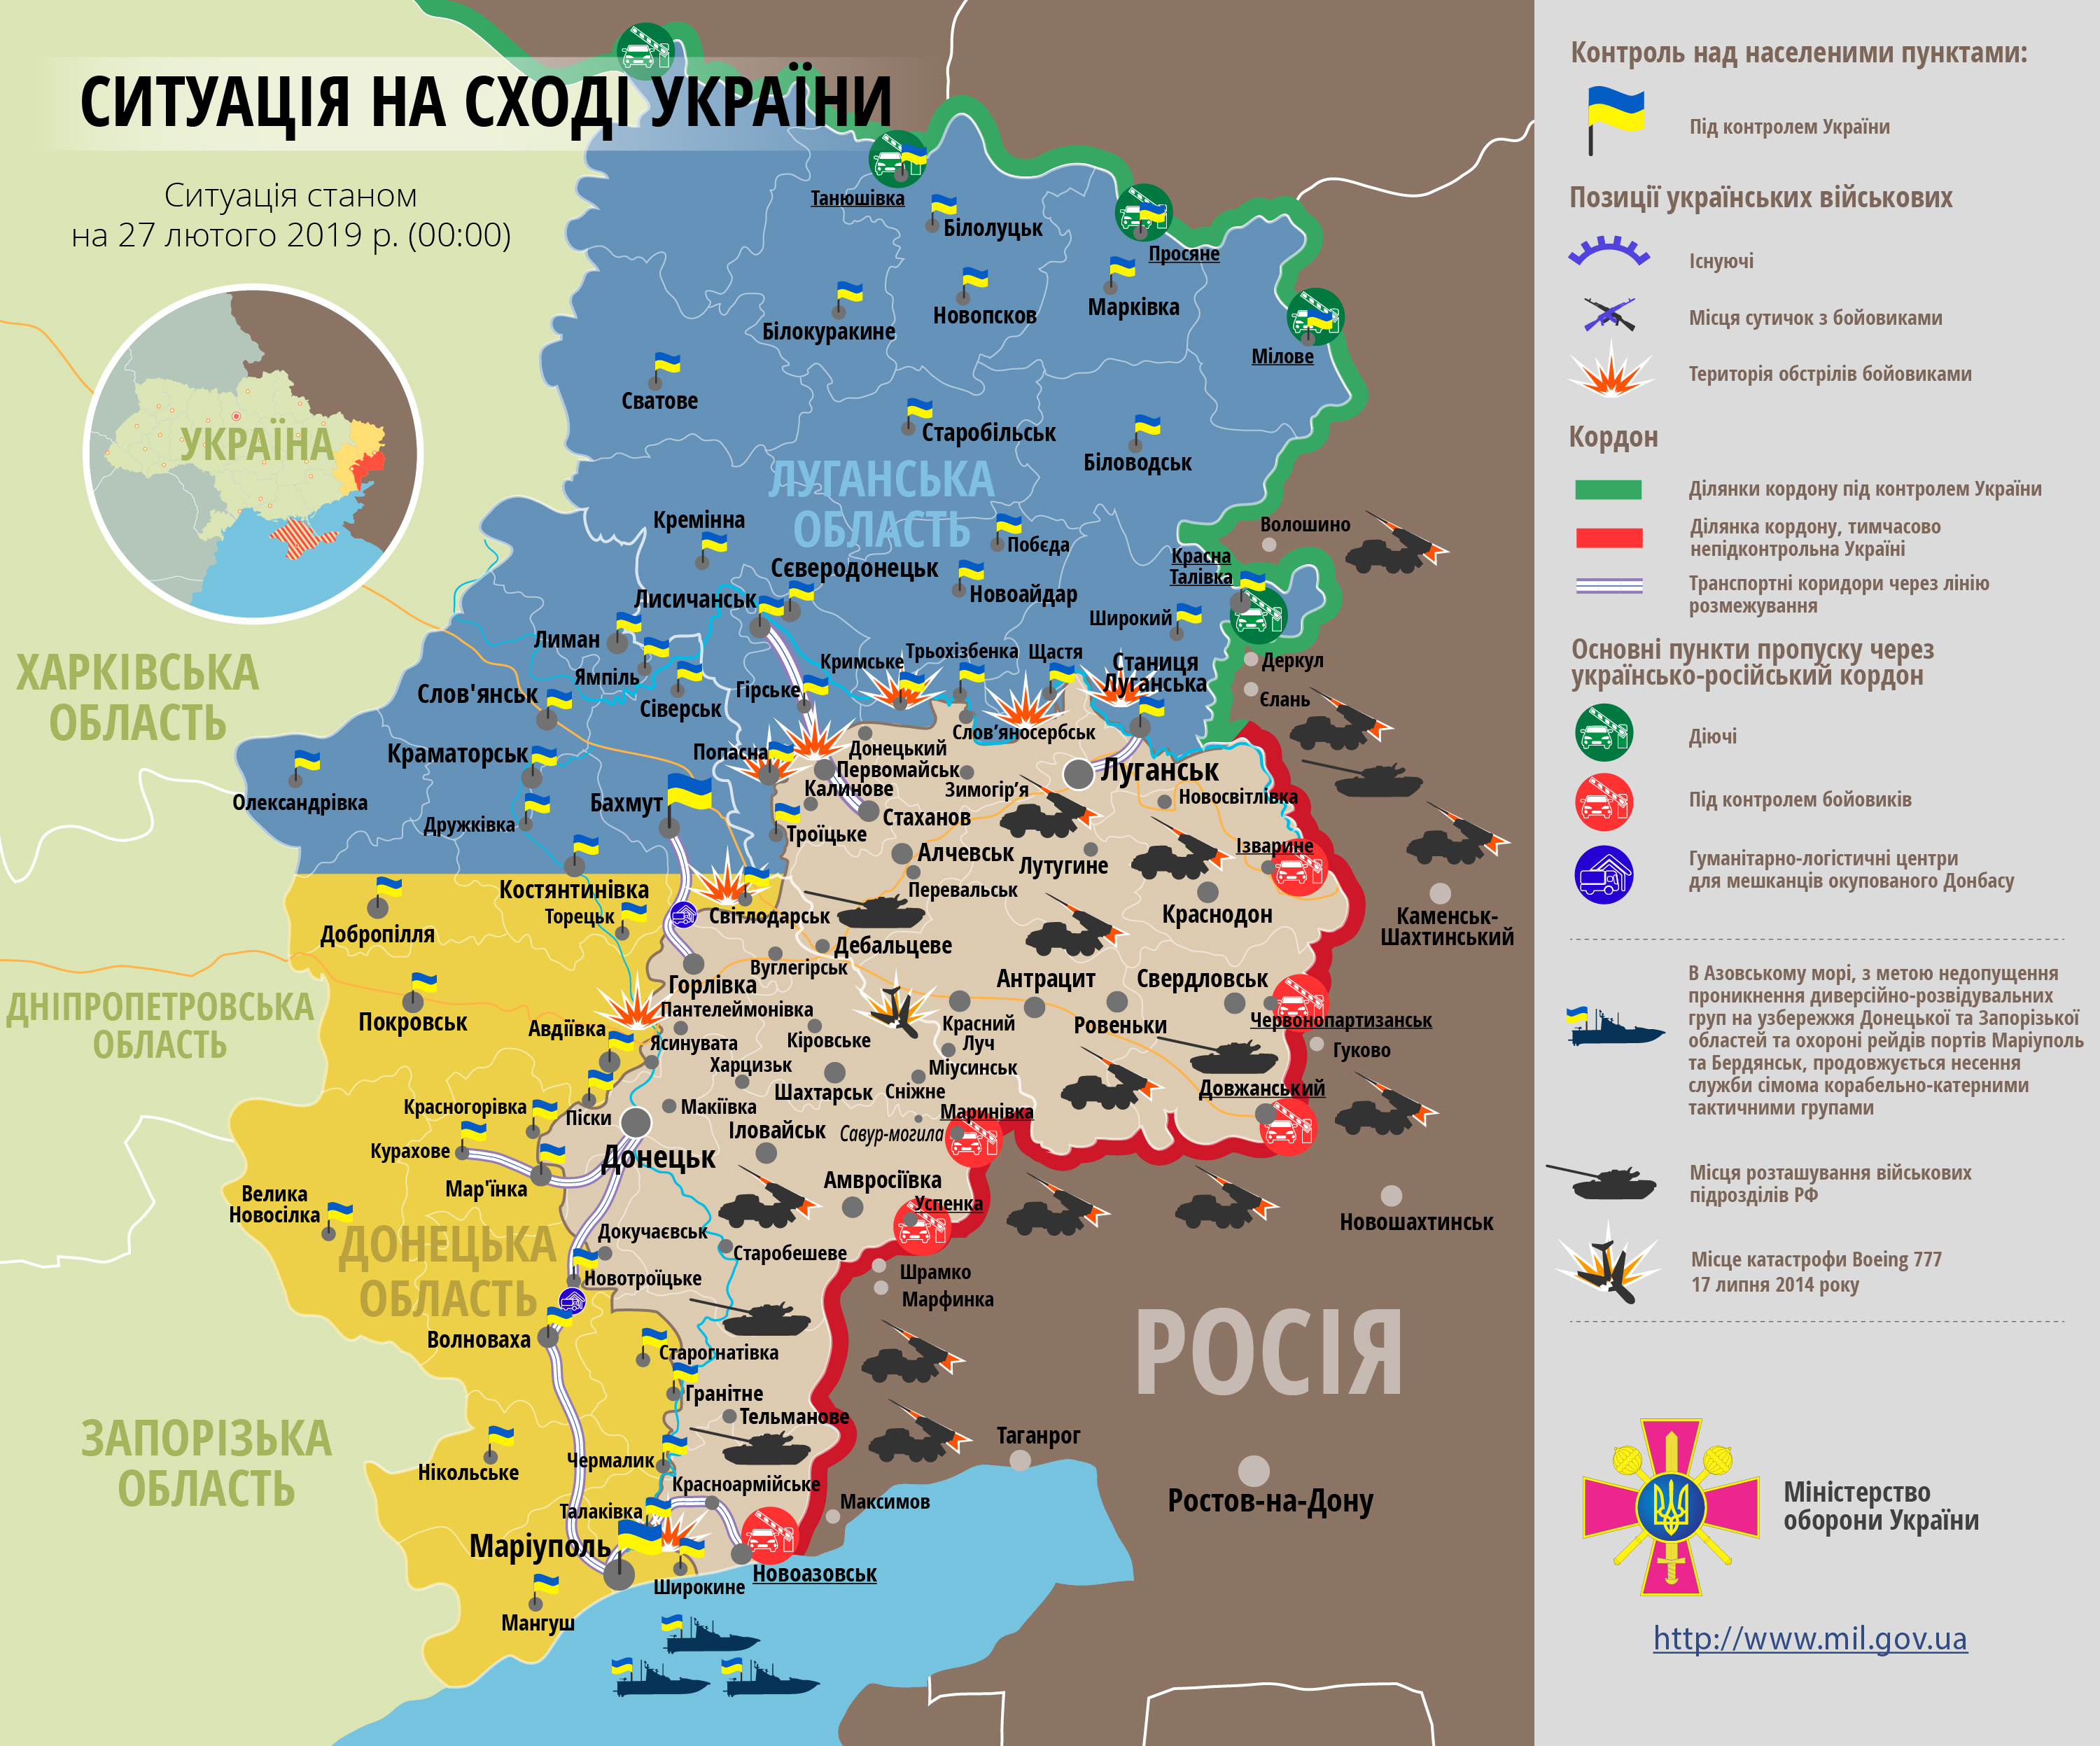 Штаб ООС: Бойовики на Донбасі знову почали гатити з артилерії та продовжують стріляти снайпери